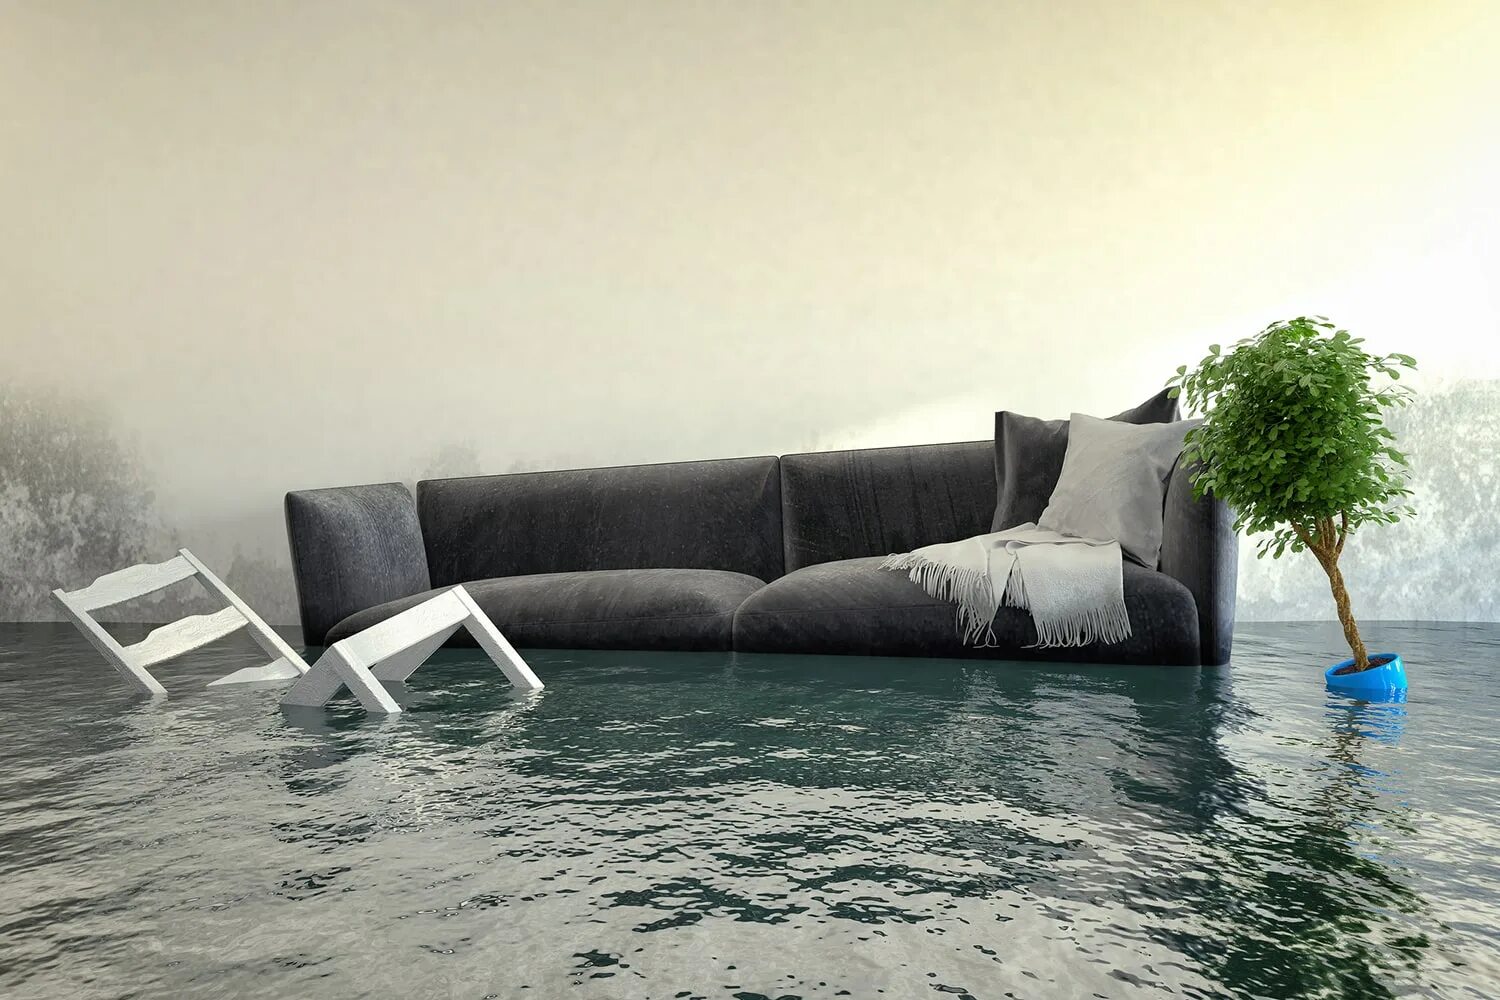 Вода в квартире. Диван в воде. Затопленная комната. Мебель в воде. Мокрый диван.